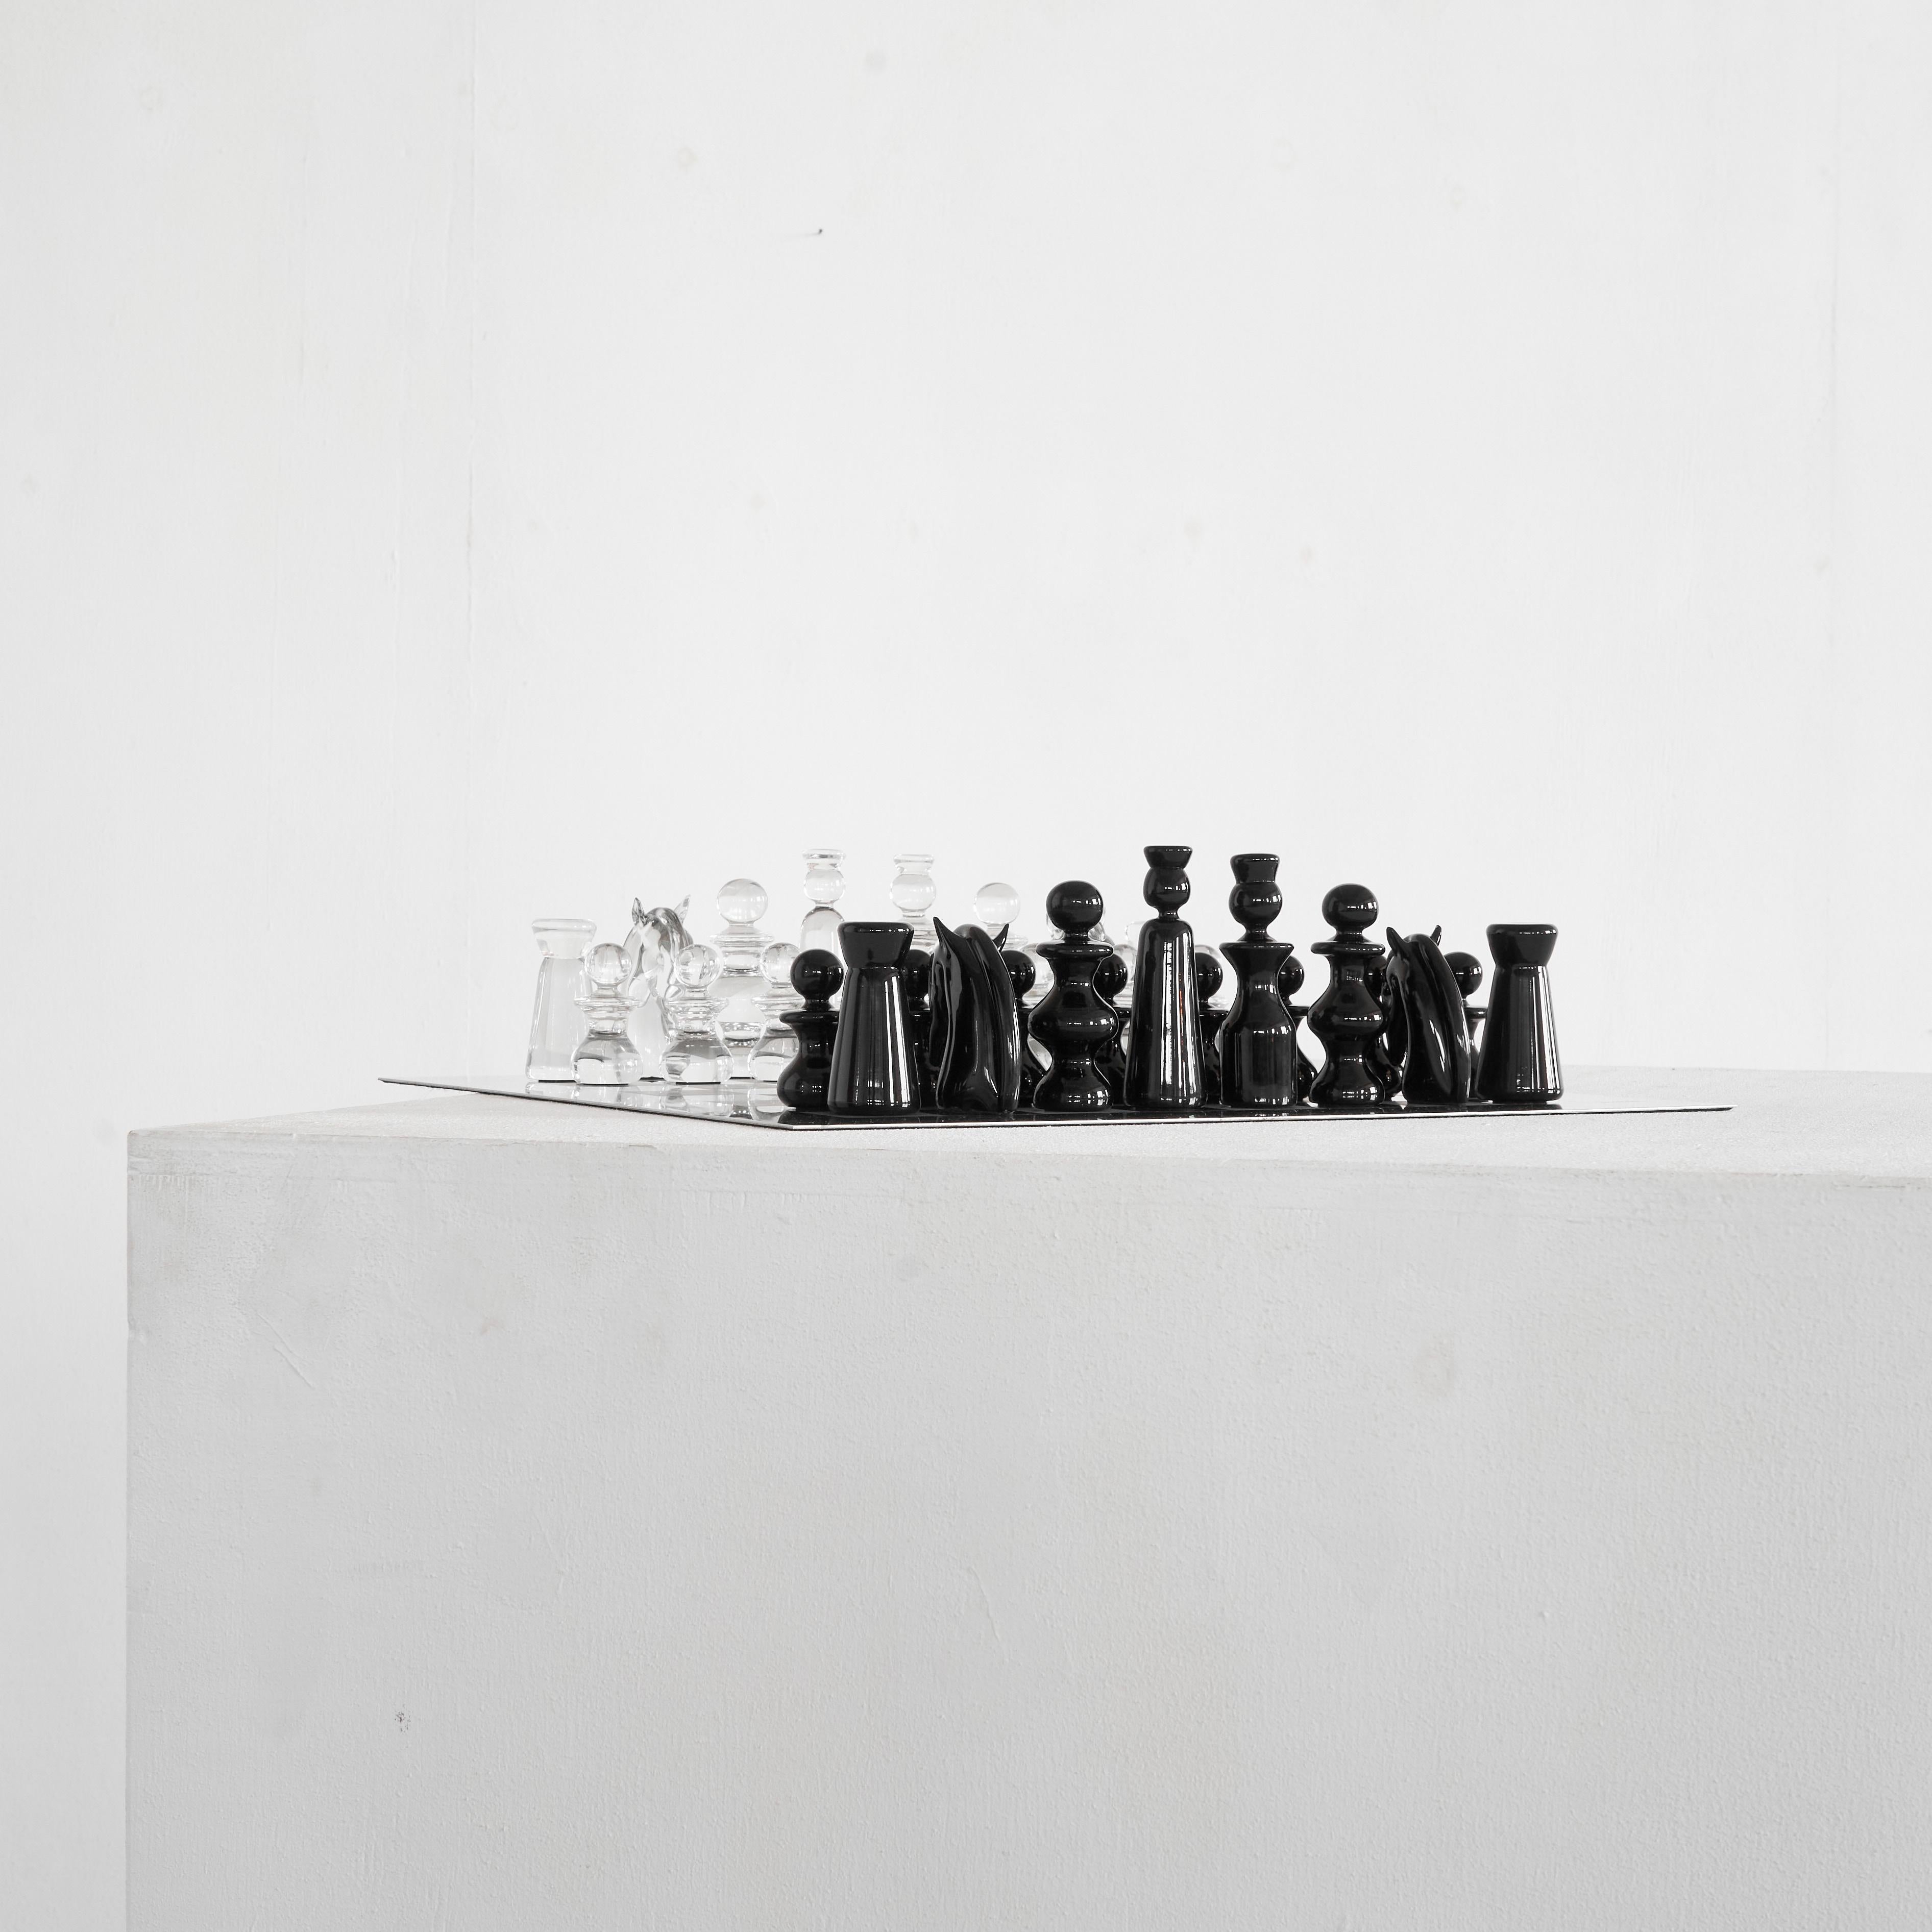 Gino Cenedese Ultra Rare Murano Glass Chess Set, Venedig, Italien, 1960er Jahre.

Dies ist ein sehr seltenes Murano-Glasschachspiel von Gino Cenedese - einem der berühmten Glaskünstler aus Venedig, Italien. 

Das Cenedese Schachspiel stammt direkt